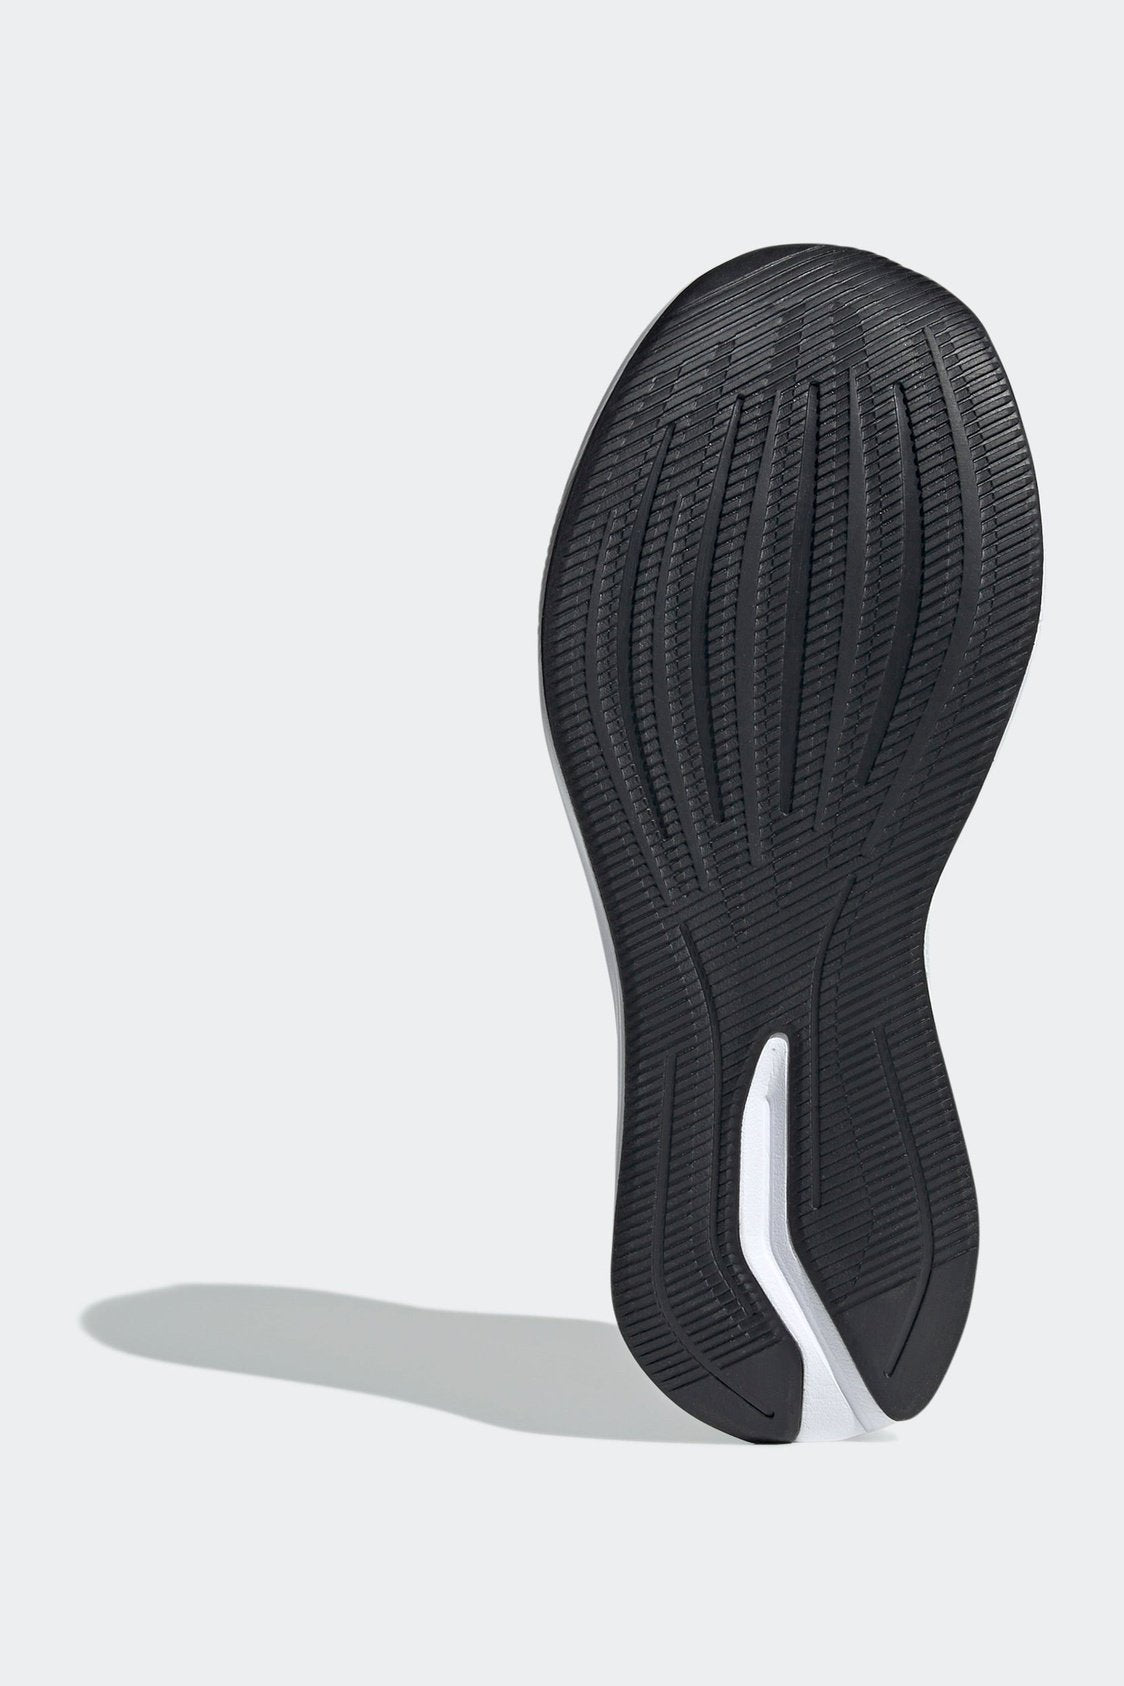 נעלי ספורט לנשים DURAMO RC בצבע אפור כסוף וירוק זוהר